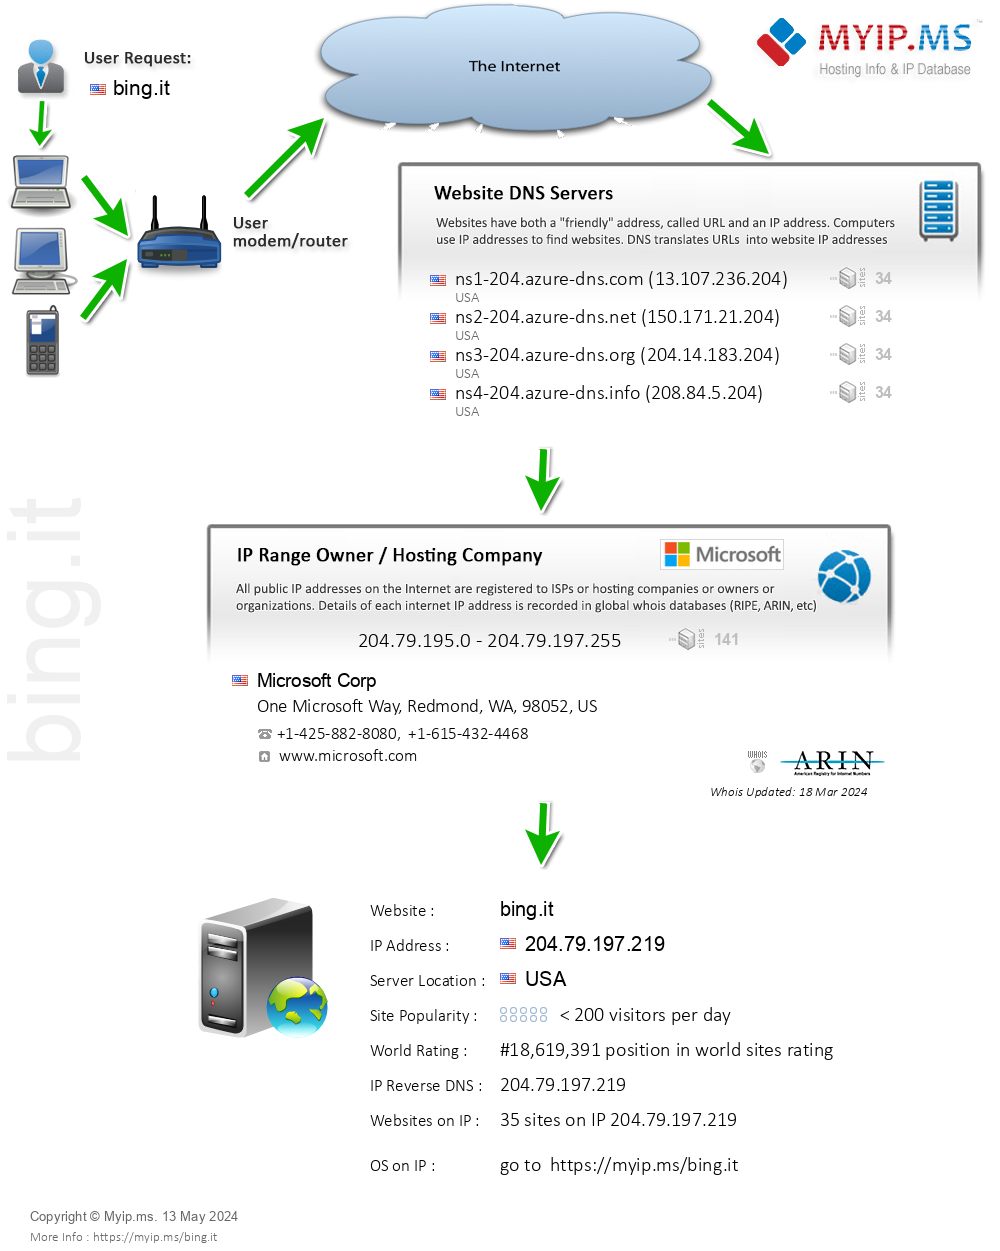 Bing.it - Website Hosting Visual IP Diagram